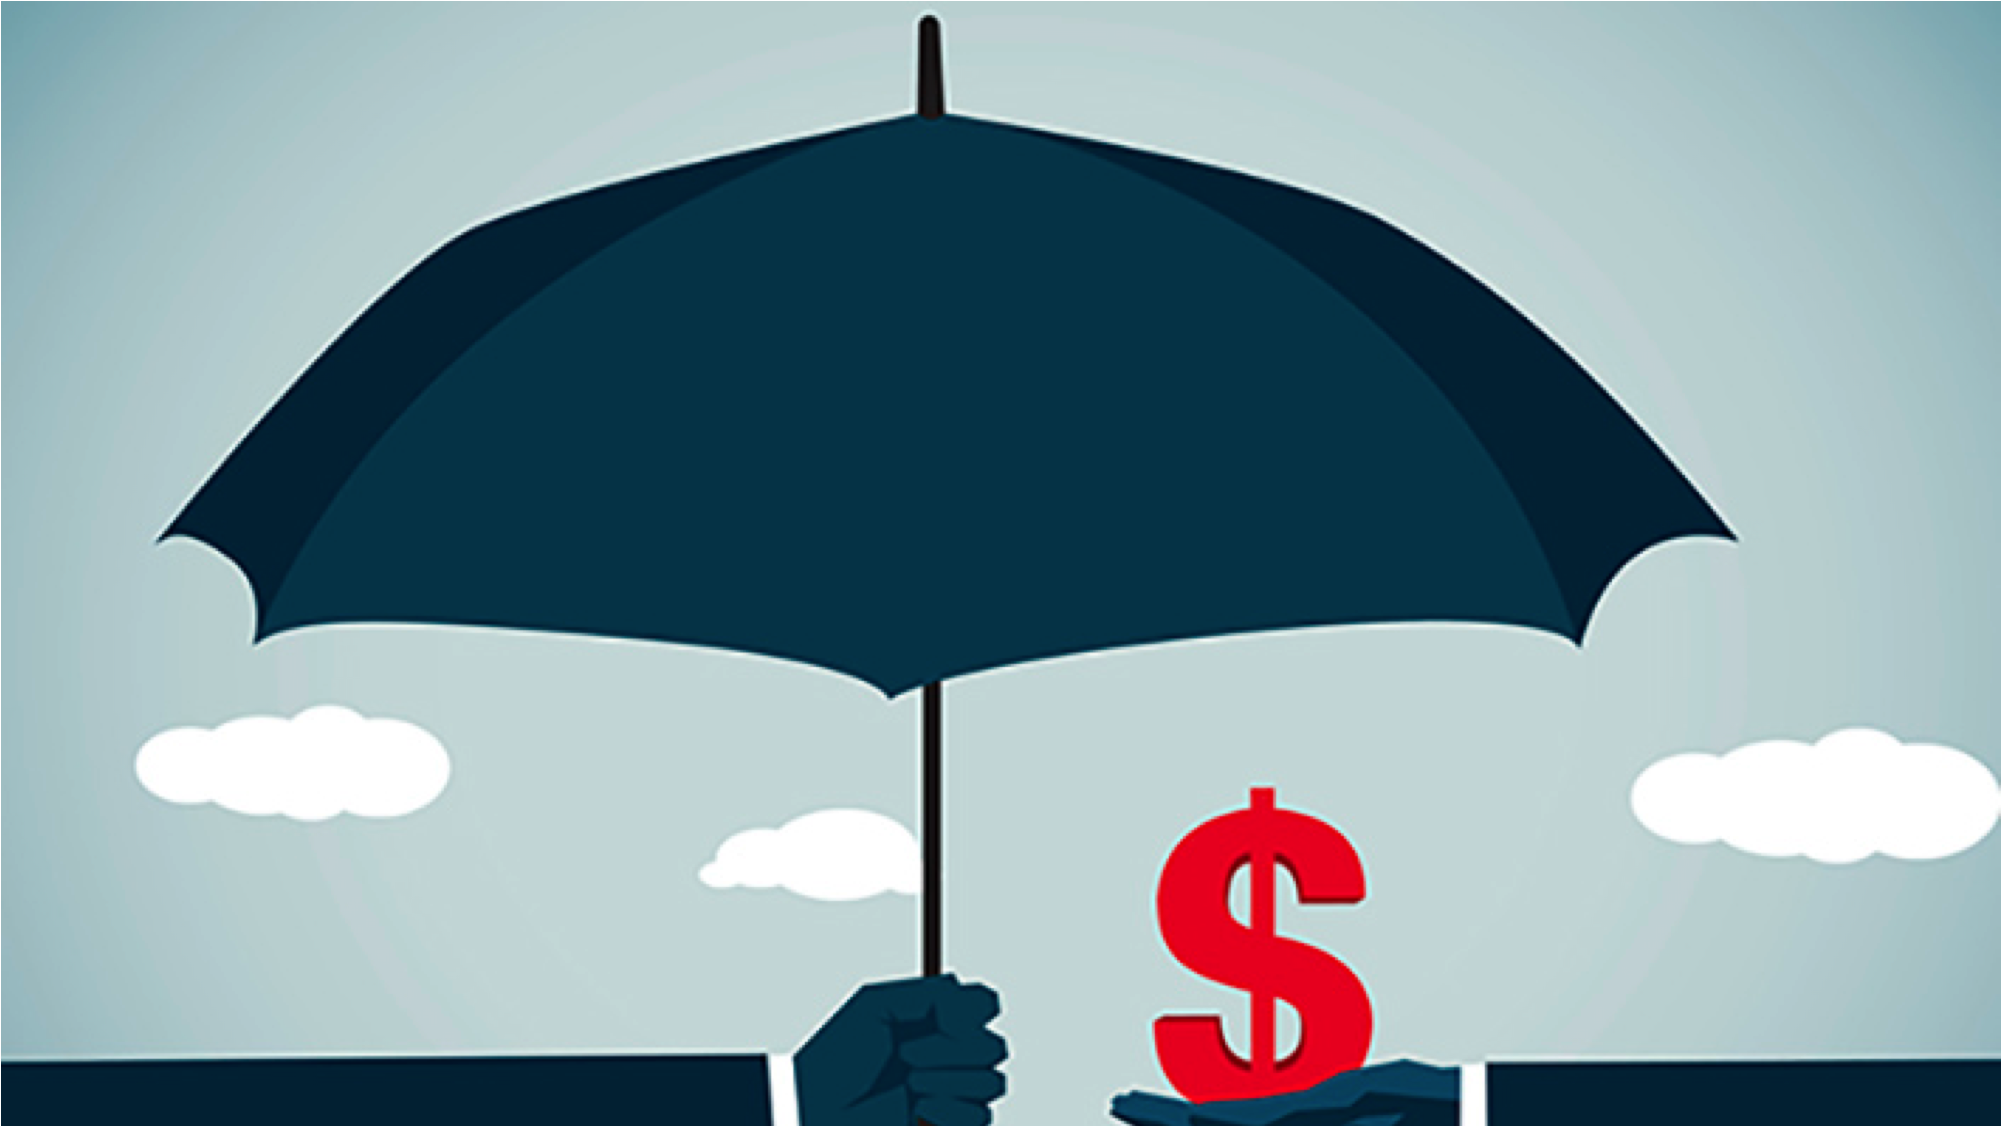 Financial Umbrella